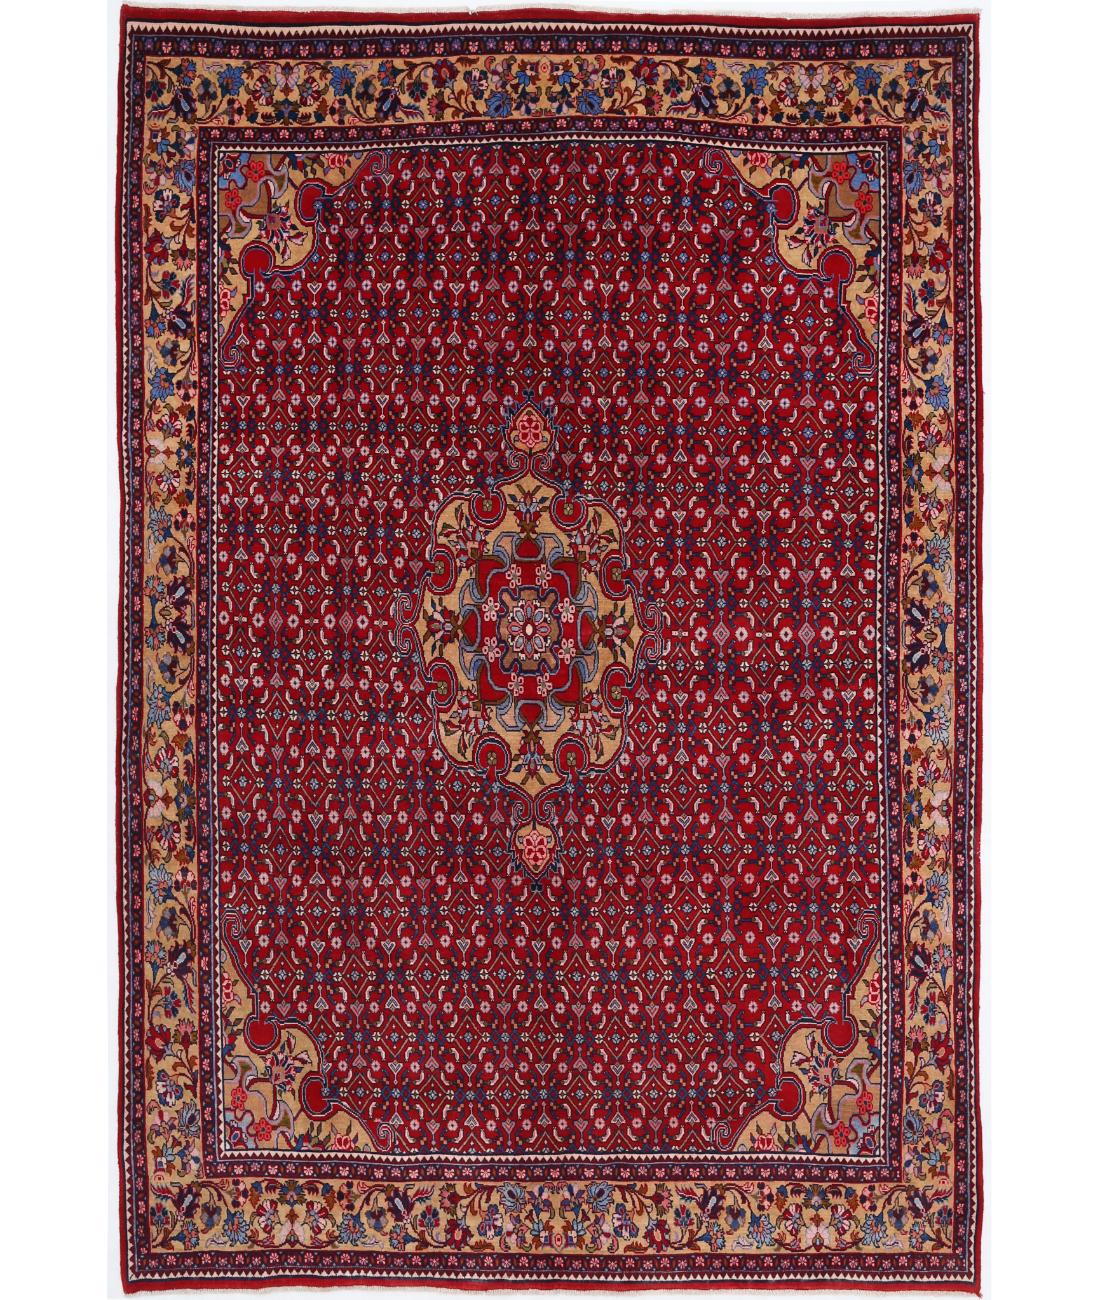 Hand Knotted Persian Bijar Wool Rug - 6'8'' x 10'0'' 6' 8" X 10' 0" ( 203 X 305 ) / Red / Beige